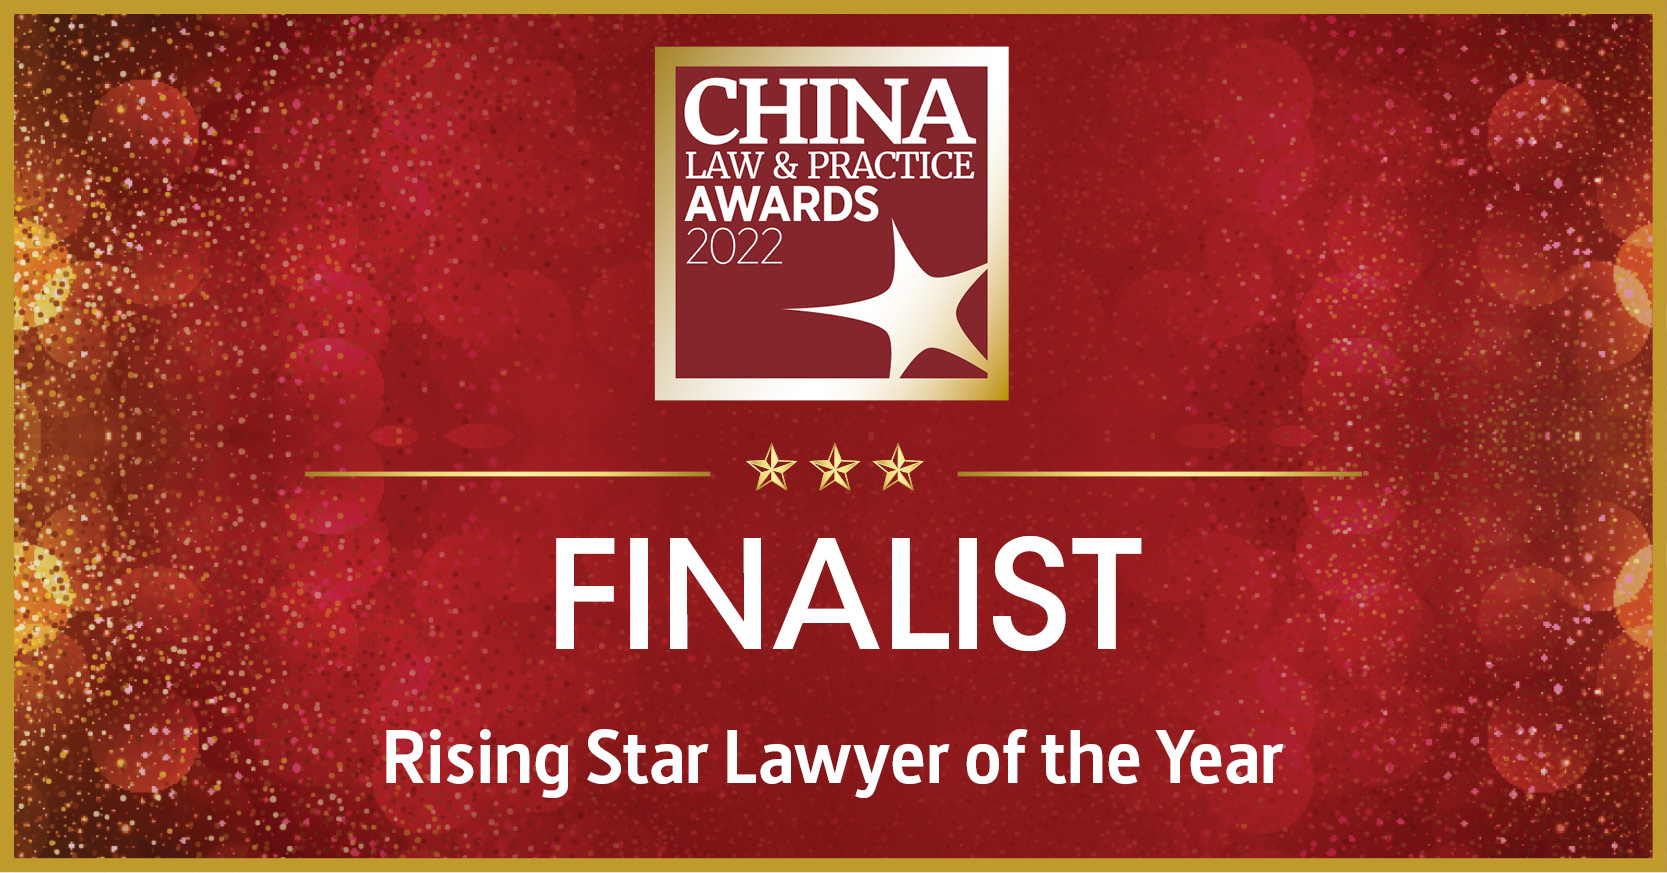 2022 年获提名入围中国法律与实务大奖 (China Law & Practice Awards) “年度新秀律师” 决赛榜单